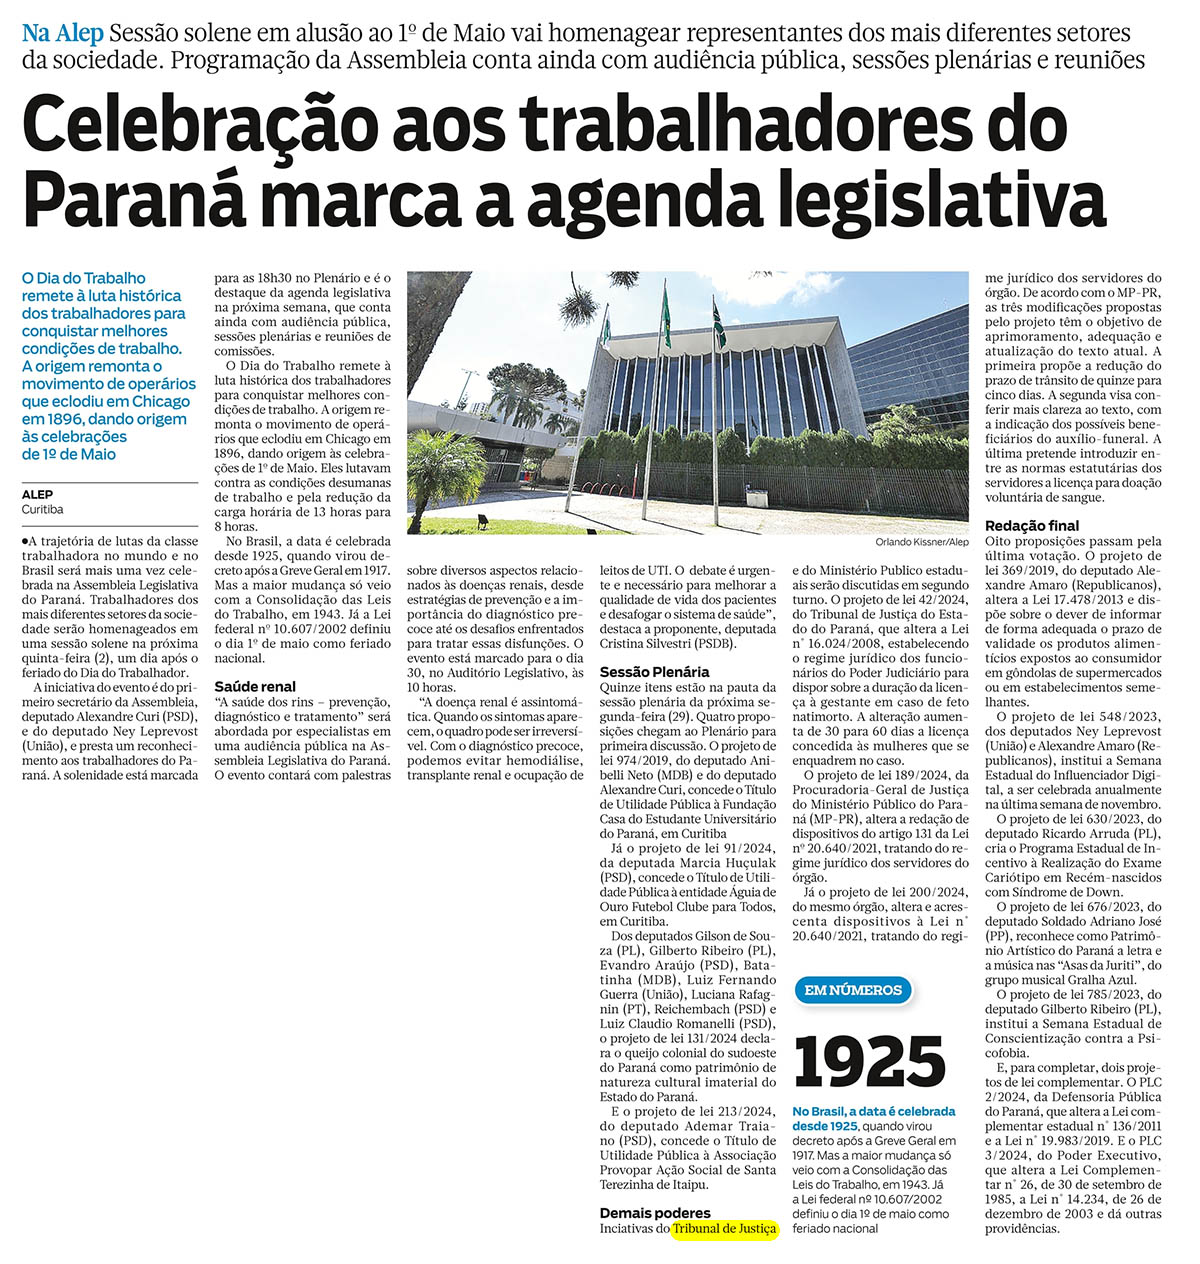 Celebração aos trabalhadores do Paraná marca a agenda legislativa